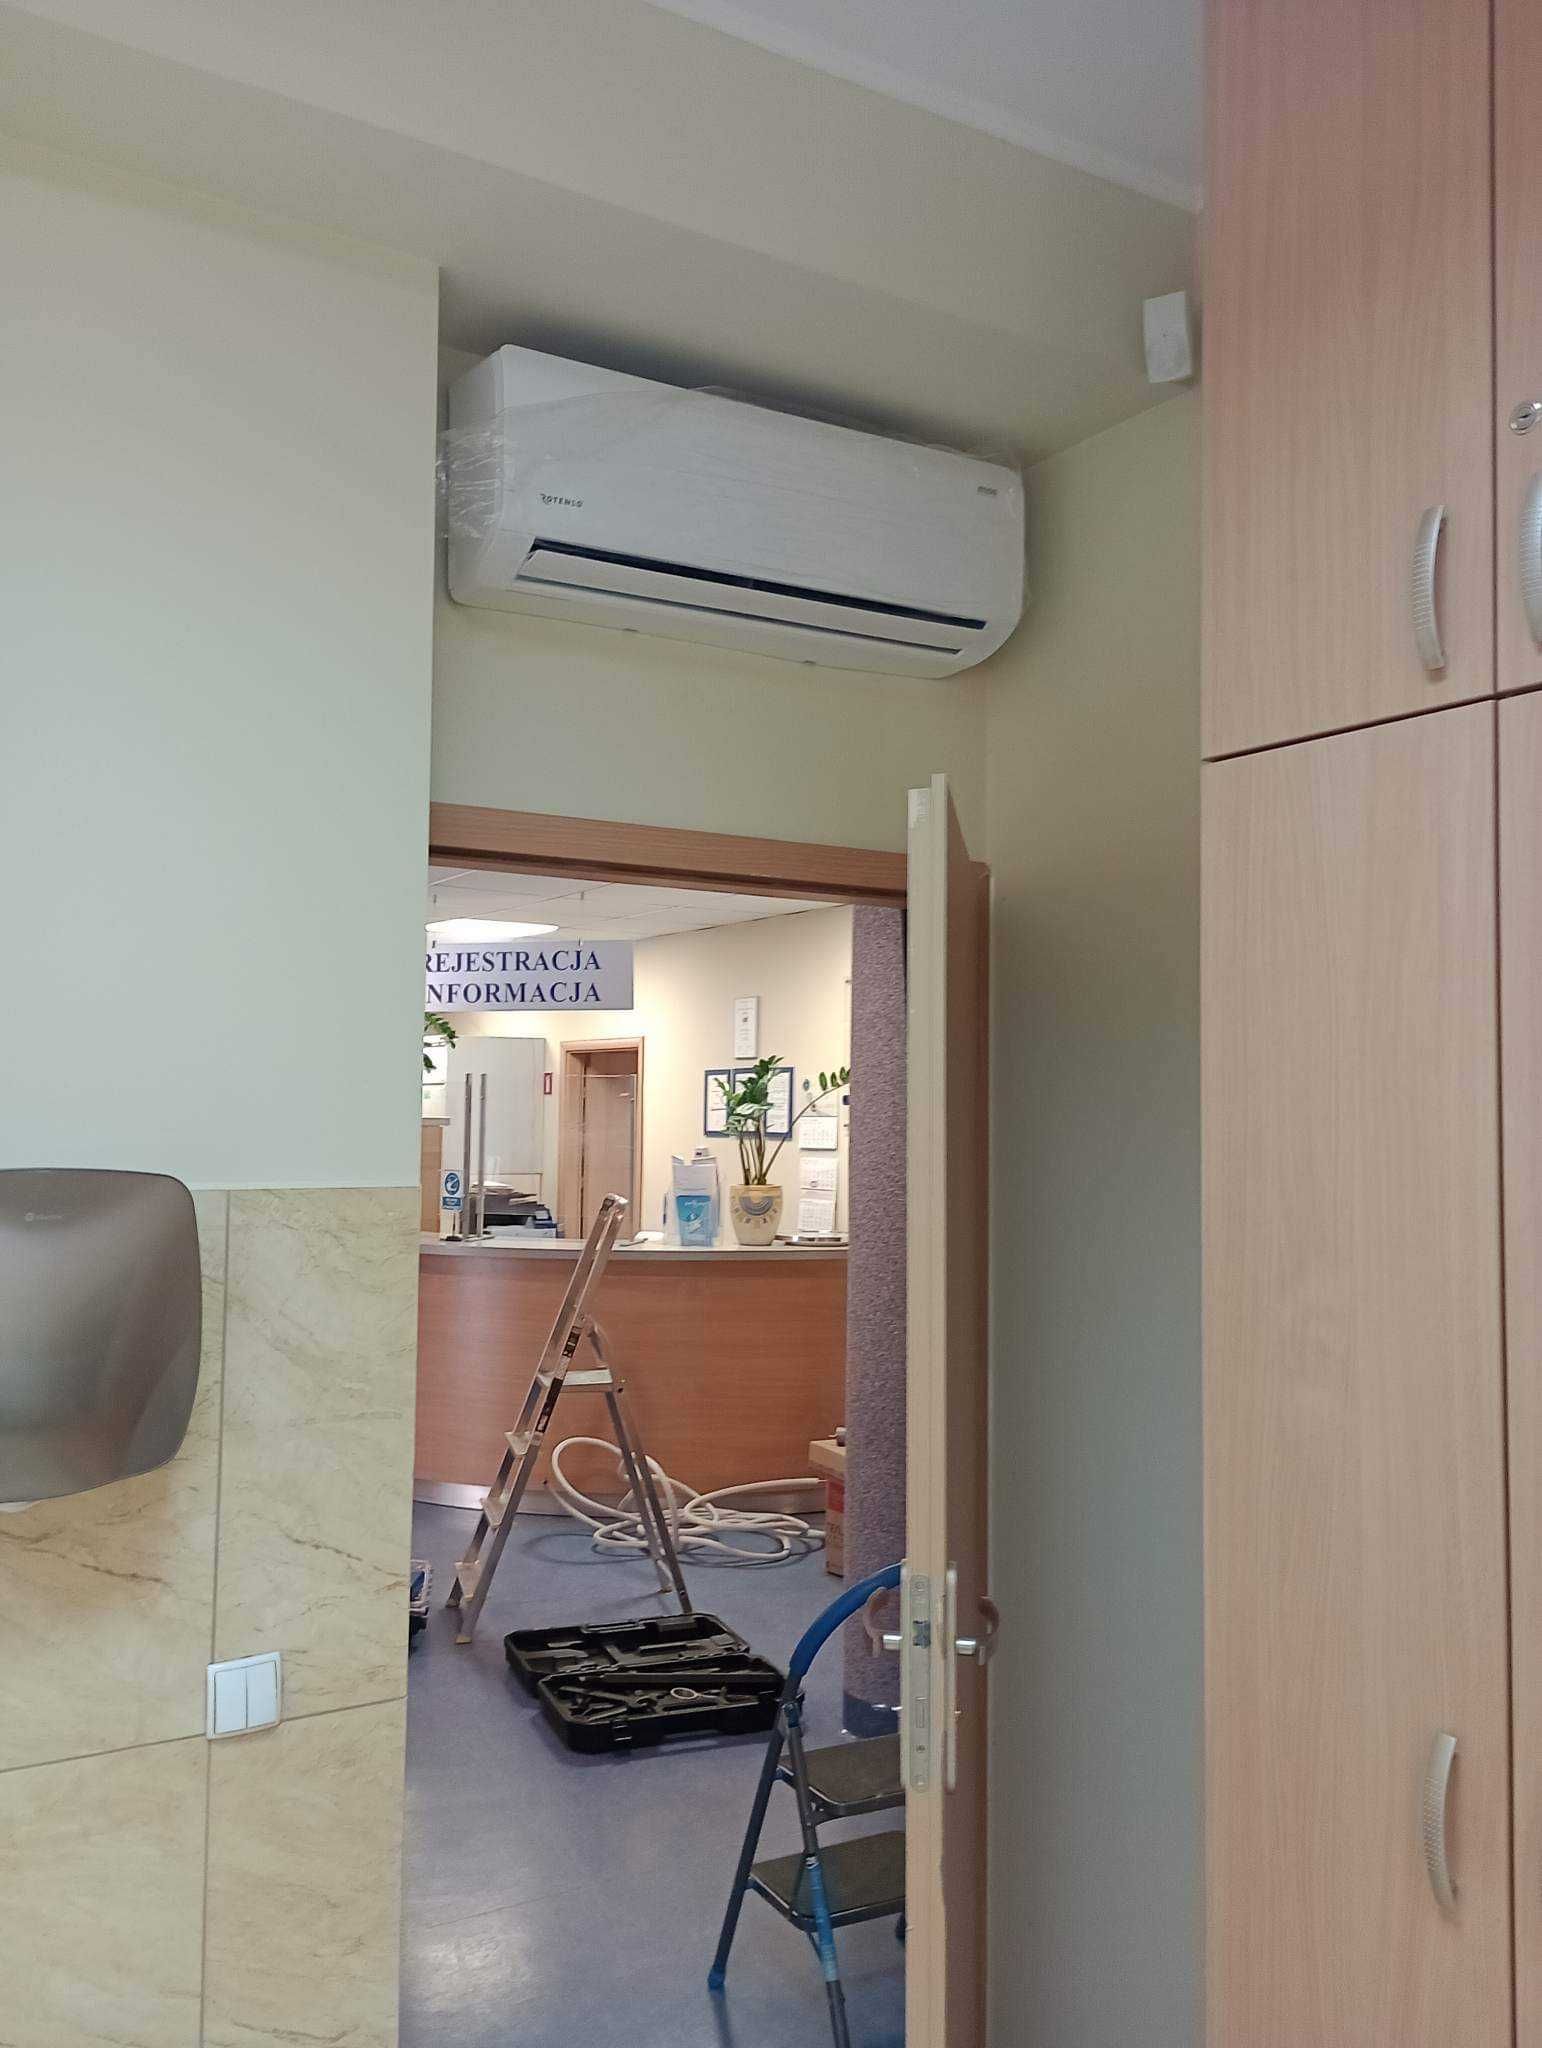 Montaż klimatyzacji domowej/firma Dobrzeń Wielki  Systemy VRF/RFV